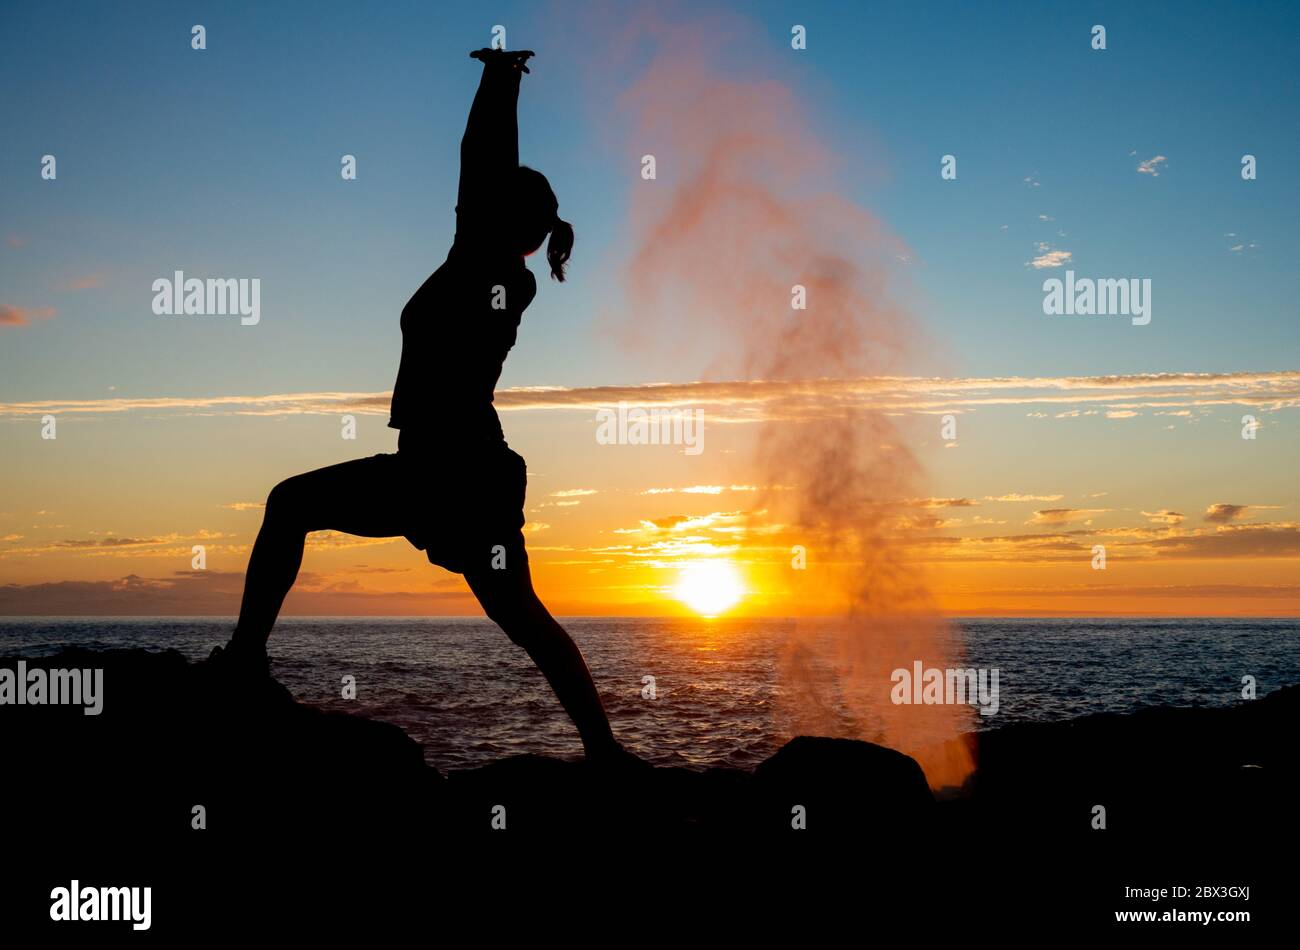 Las Palmas, Grande Canarie, Îles Canaries, Espagne. 4 juin 2020. Un jogging s'étend au coucher du soleil tandis que l'eau s'écoulait d'un tunnel de lave sur la côte nord accidentée de Gran Canaria Credit:Alan Dawson/Alay Live News. Banque D'Images